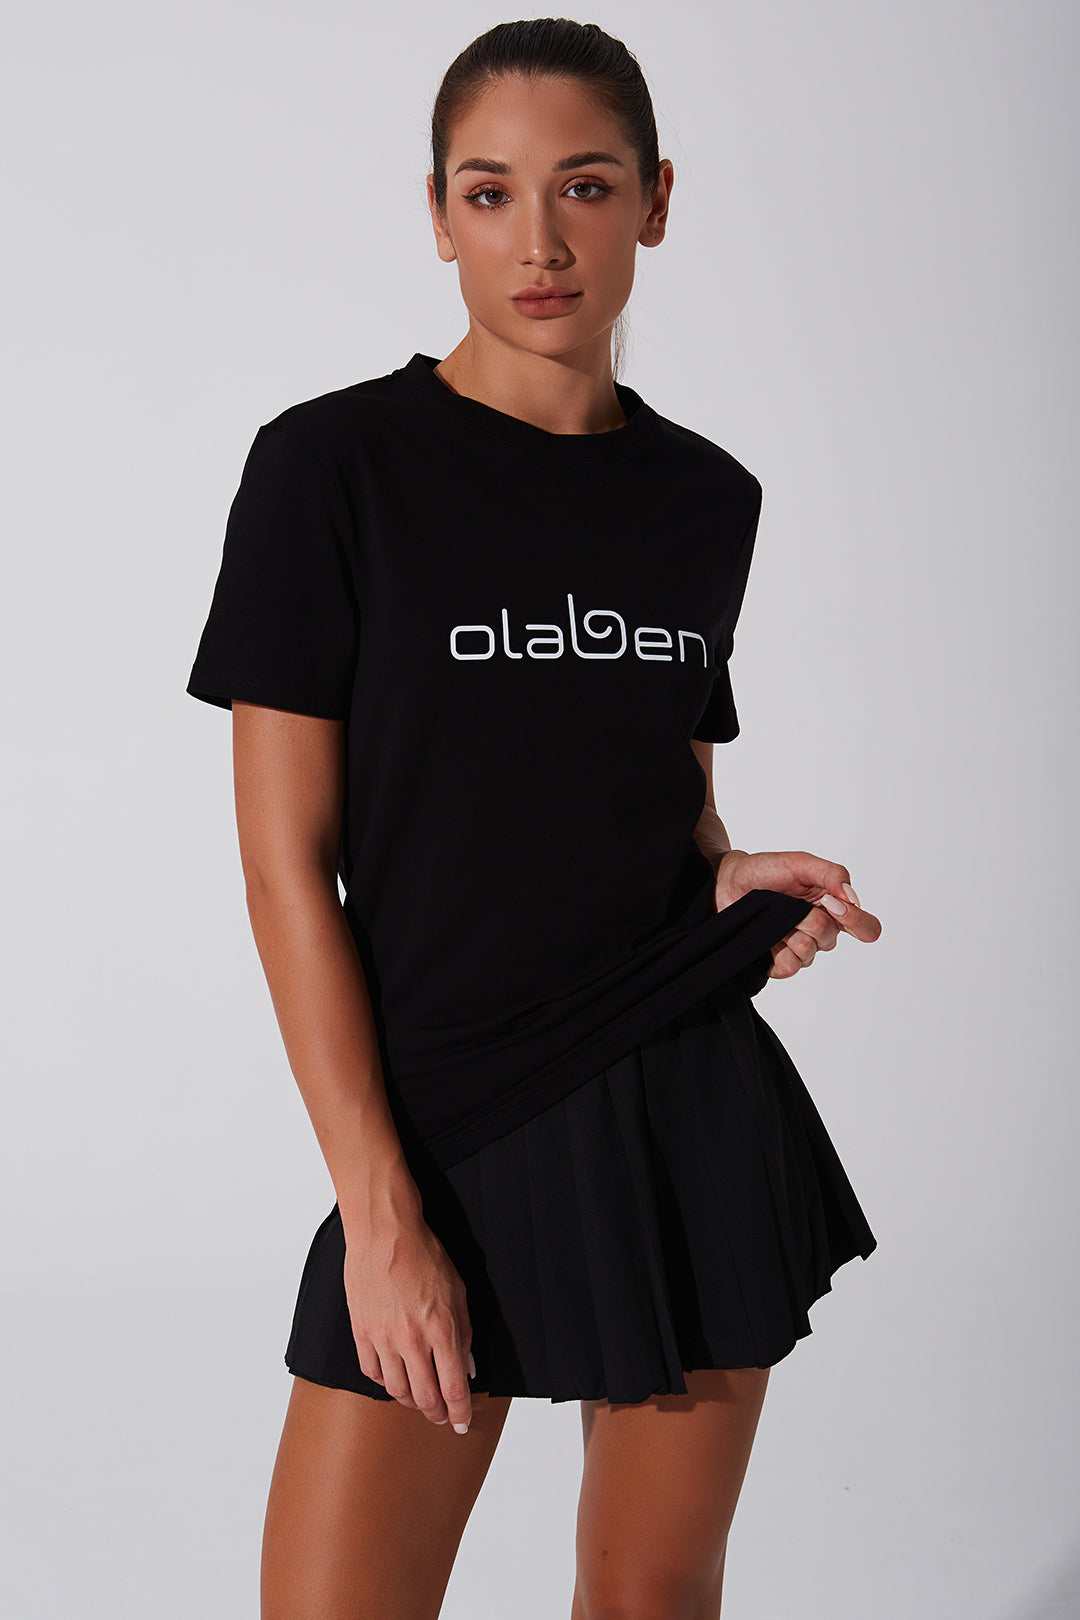 Unisex black short sleeve tee for women - versatile and stylish fashion choice.